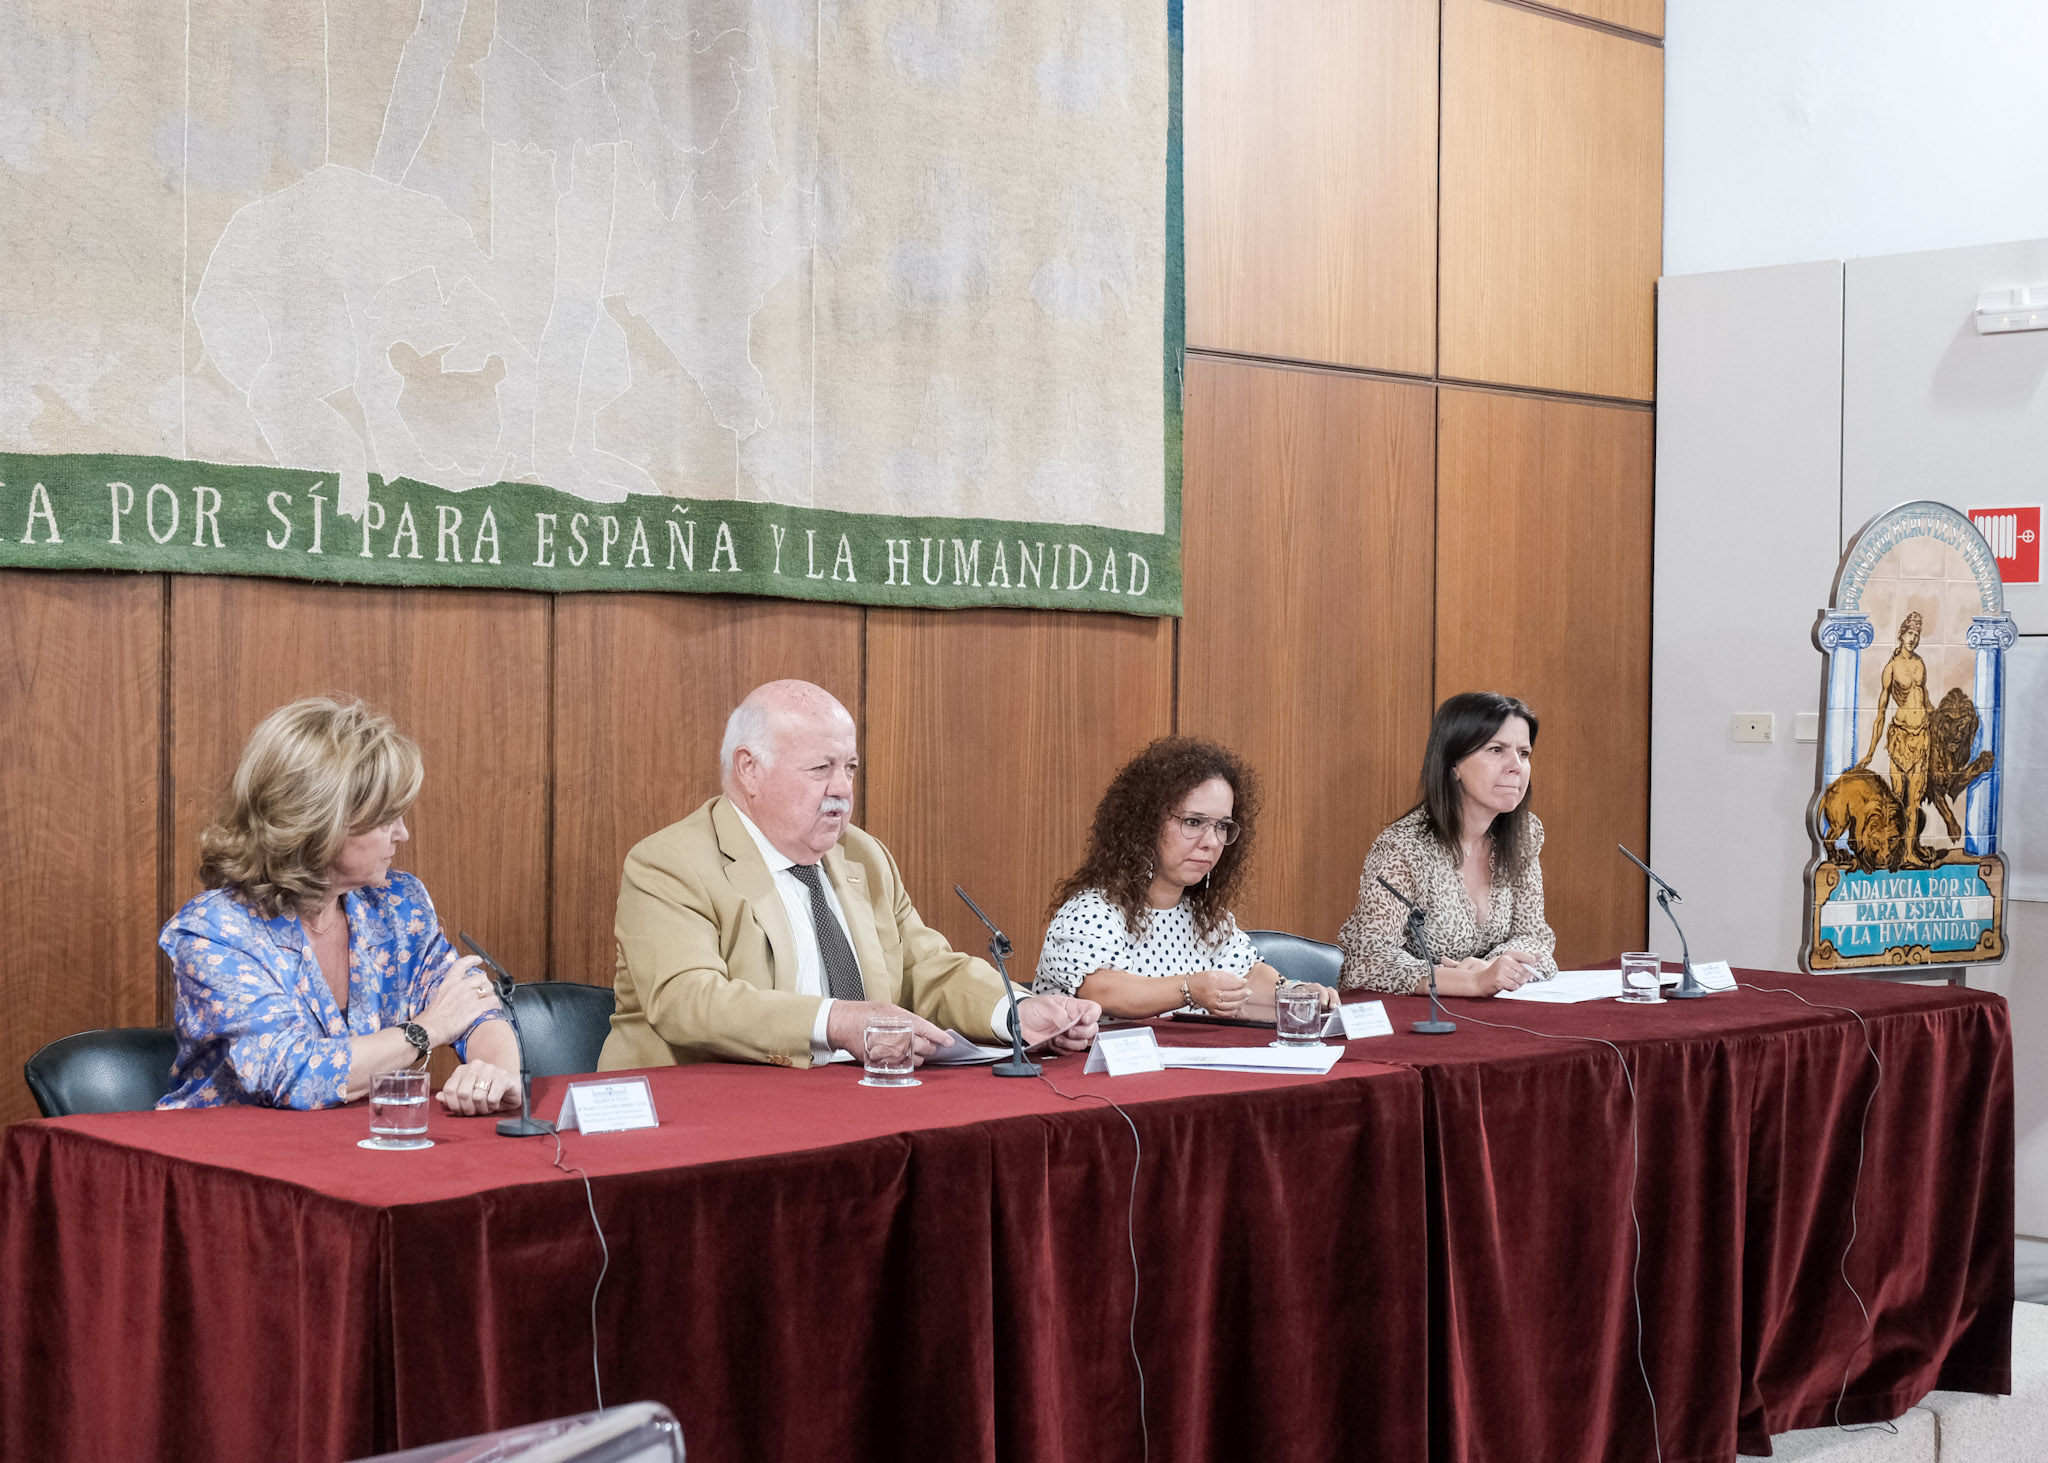  El presidente del Parlamento, Jess Aguirre, preside el acto con motivo del Da Nacional en Espaa de la Convencin Internacional sobre los Derechos de las Personas con Discapacidad